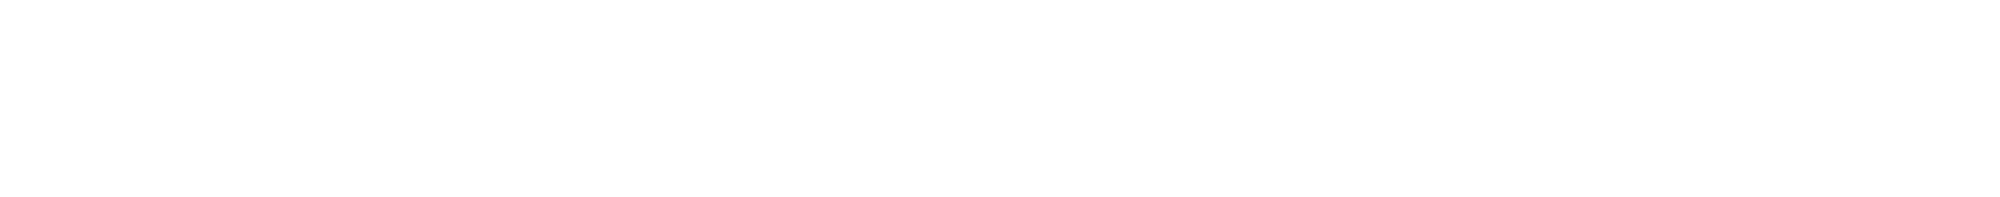 大船 ネイル PREMIER NAIL(プルミエネイル) ロゴ